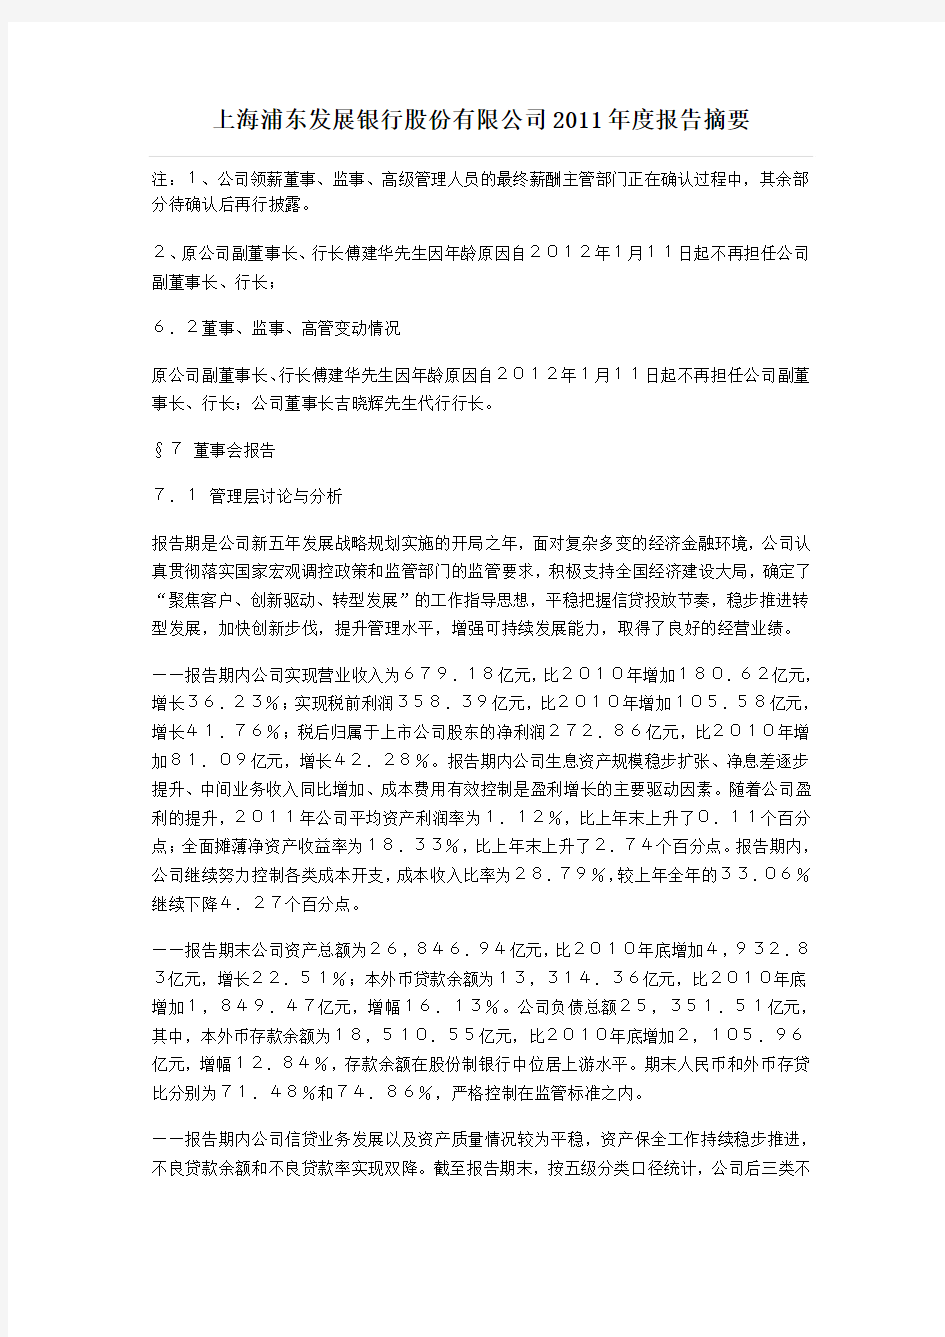 上海浦东发展银行股份有限公司2011年度报告摘要